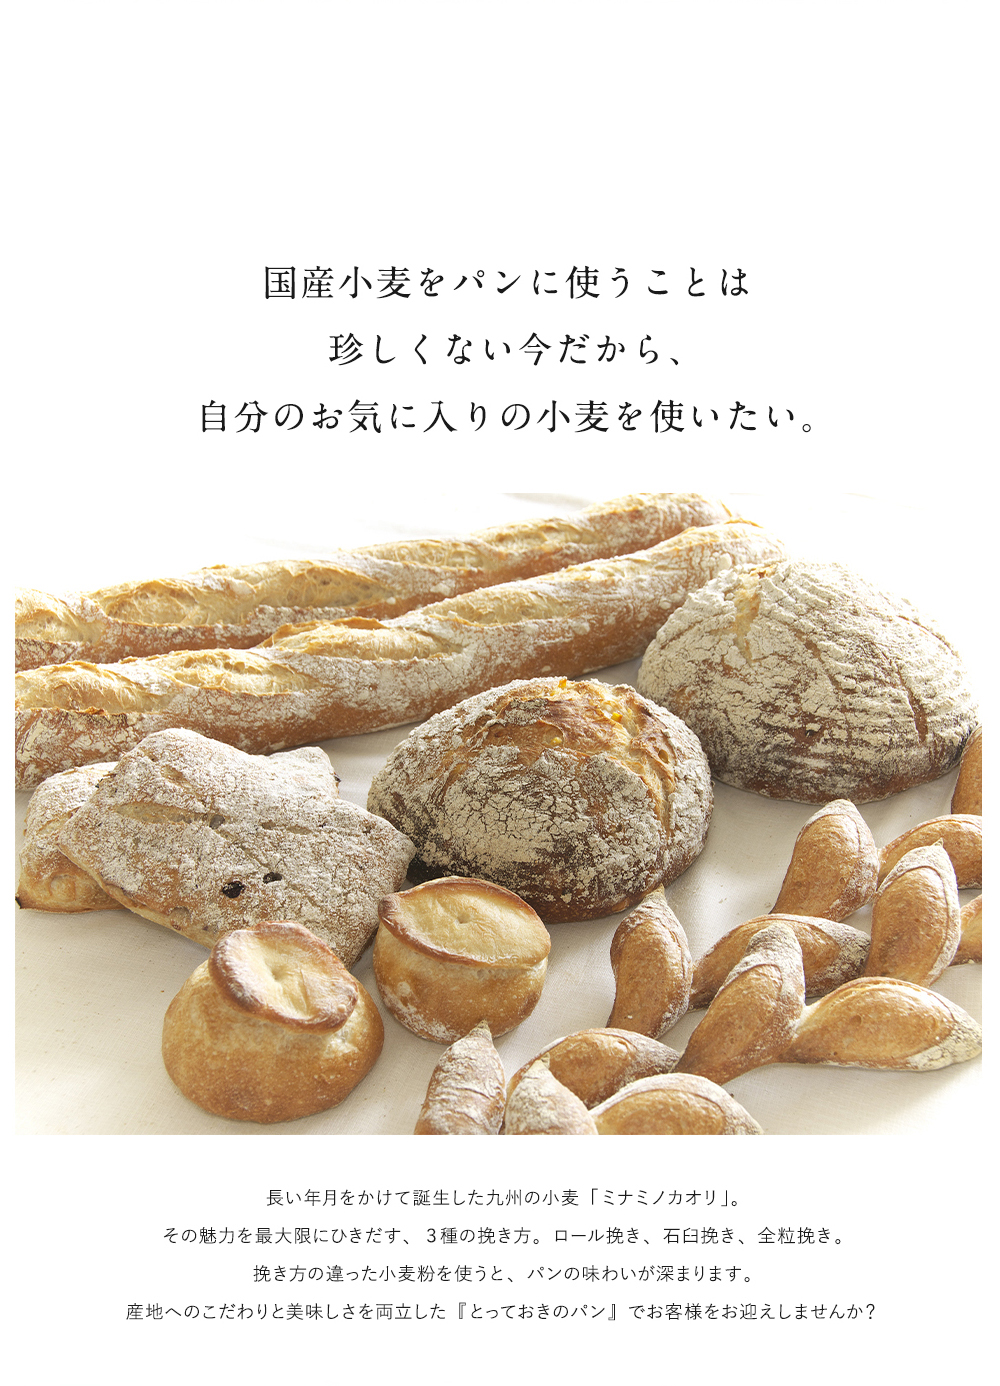 国産小麦をパンに使うことは珍しくない今だから、自分のお気に入りの小麦を使いたい。